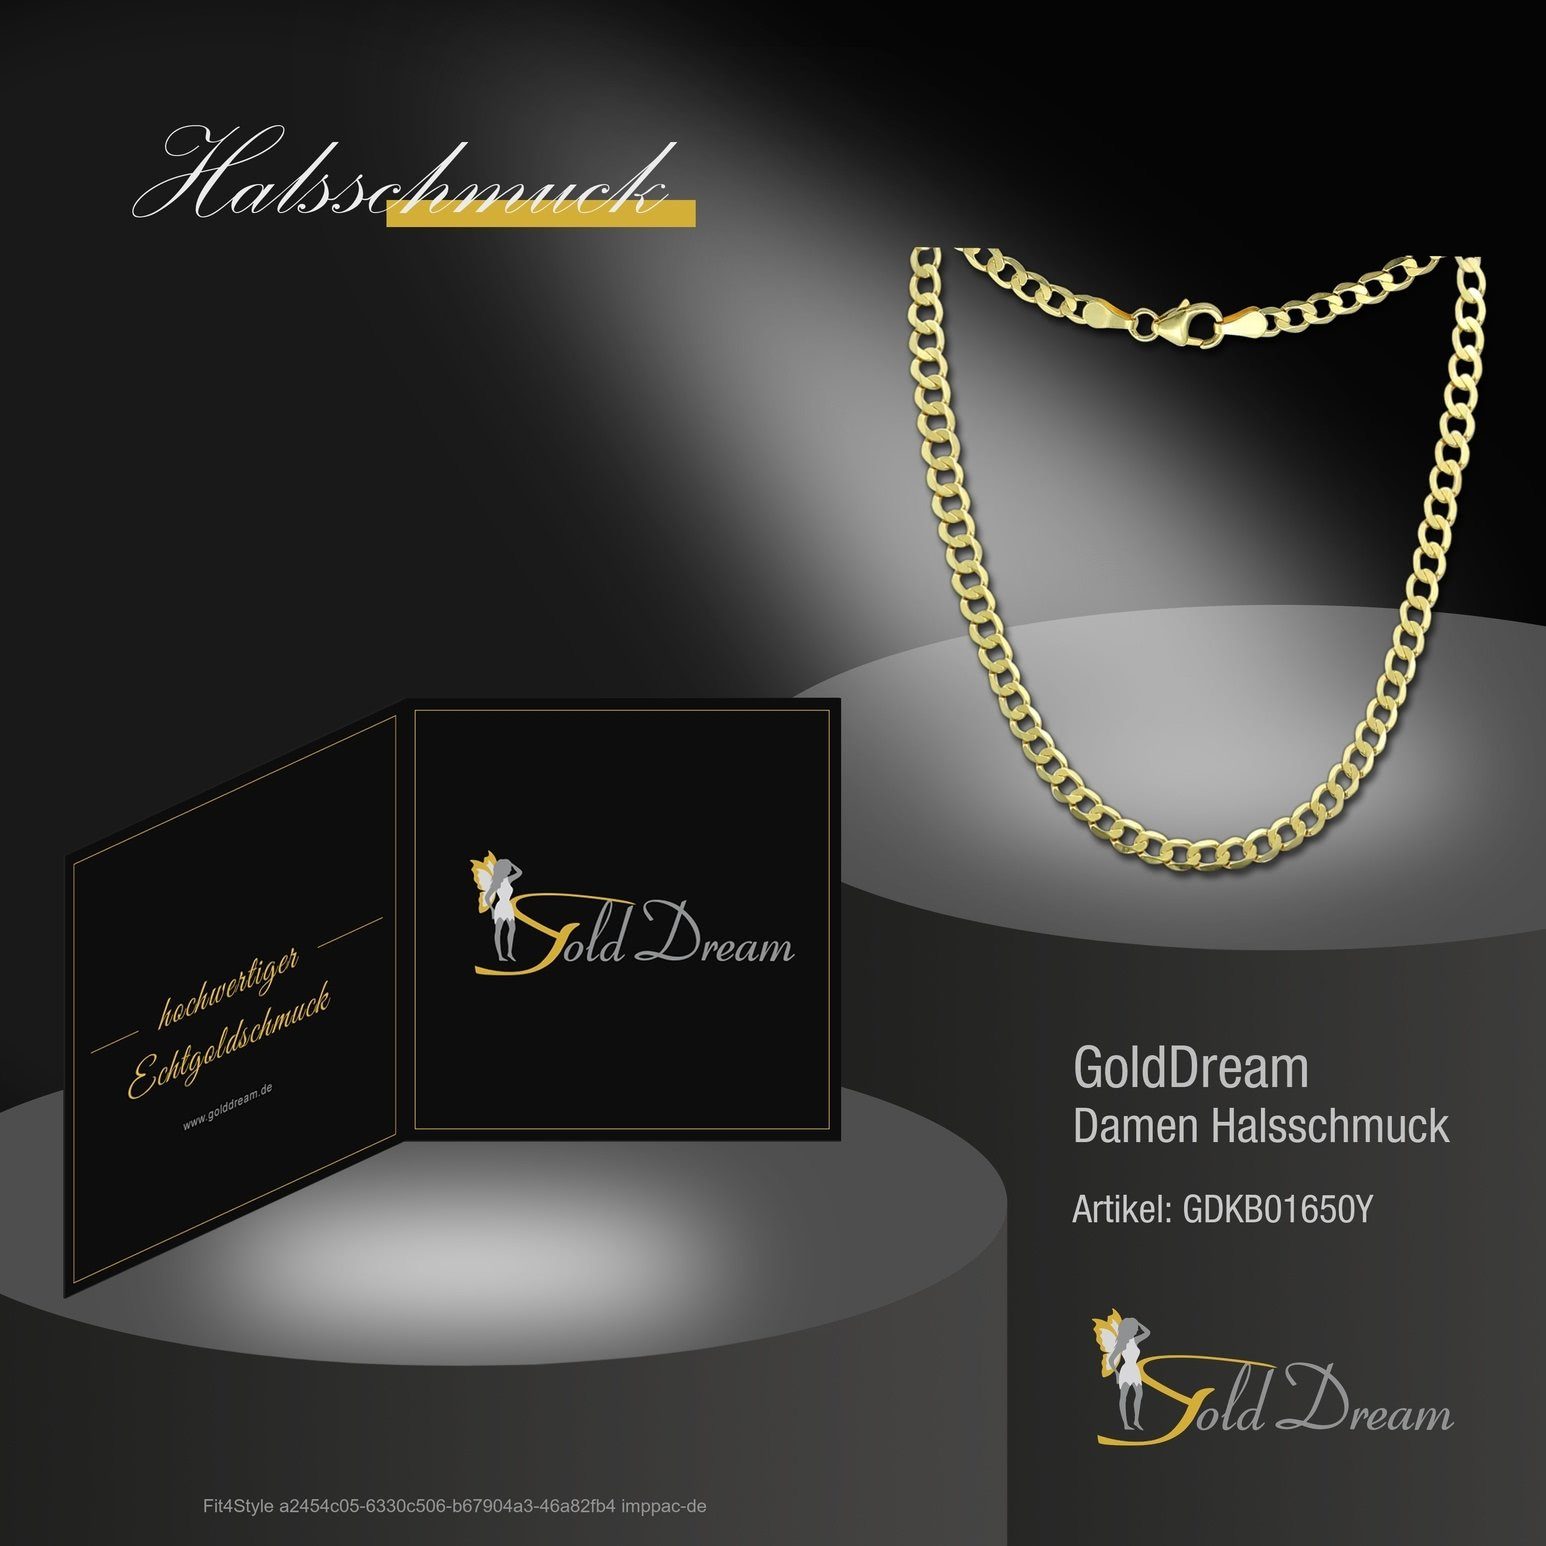 333 GoldDream Goldkette Karat, goldfarb 8 Halskette 50cm, Halskette Damen Colliers 50cm GoldDream Farbe: Colliers - Damen (Collier), Gelbgold